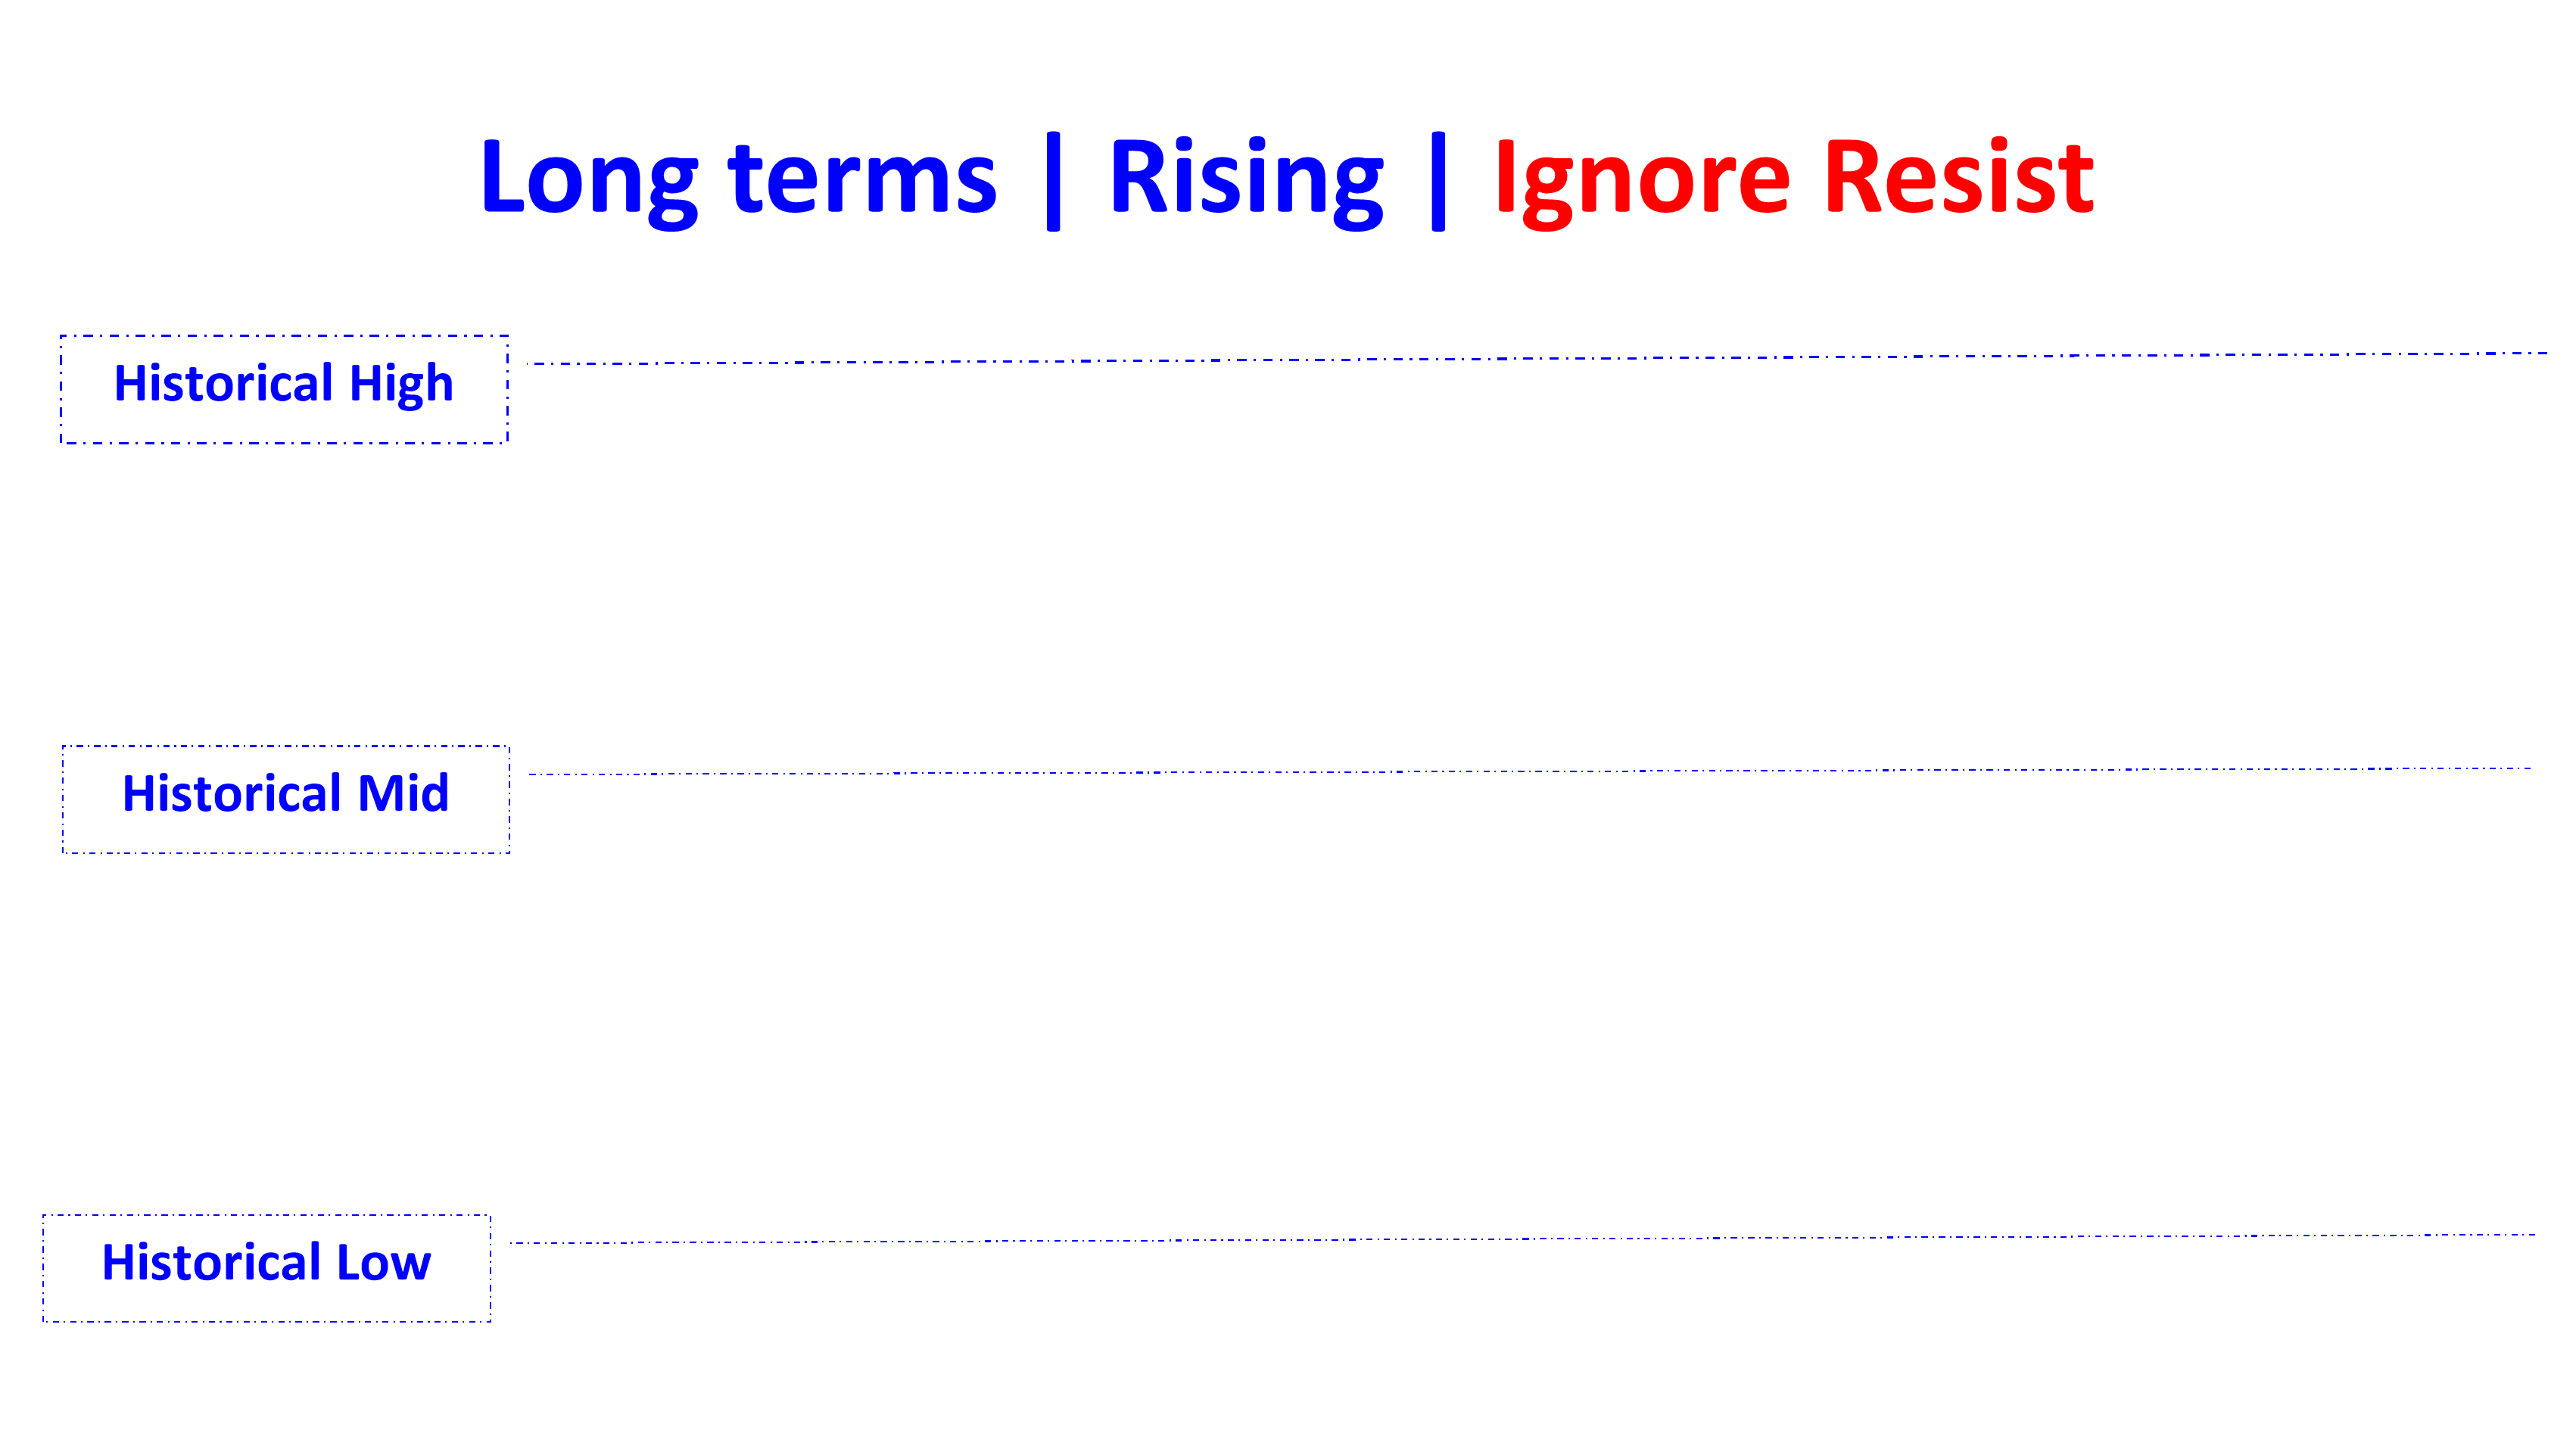 ignore resist in rising long en